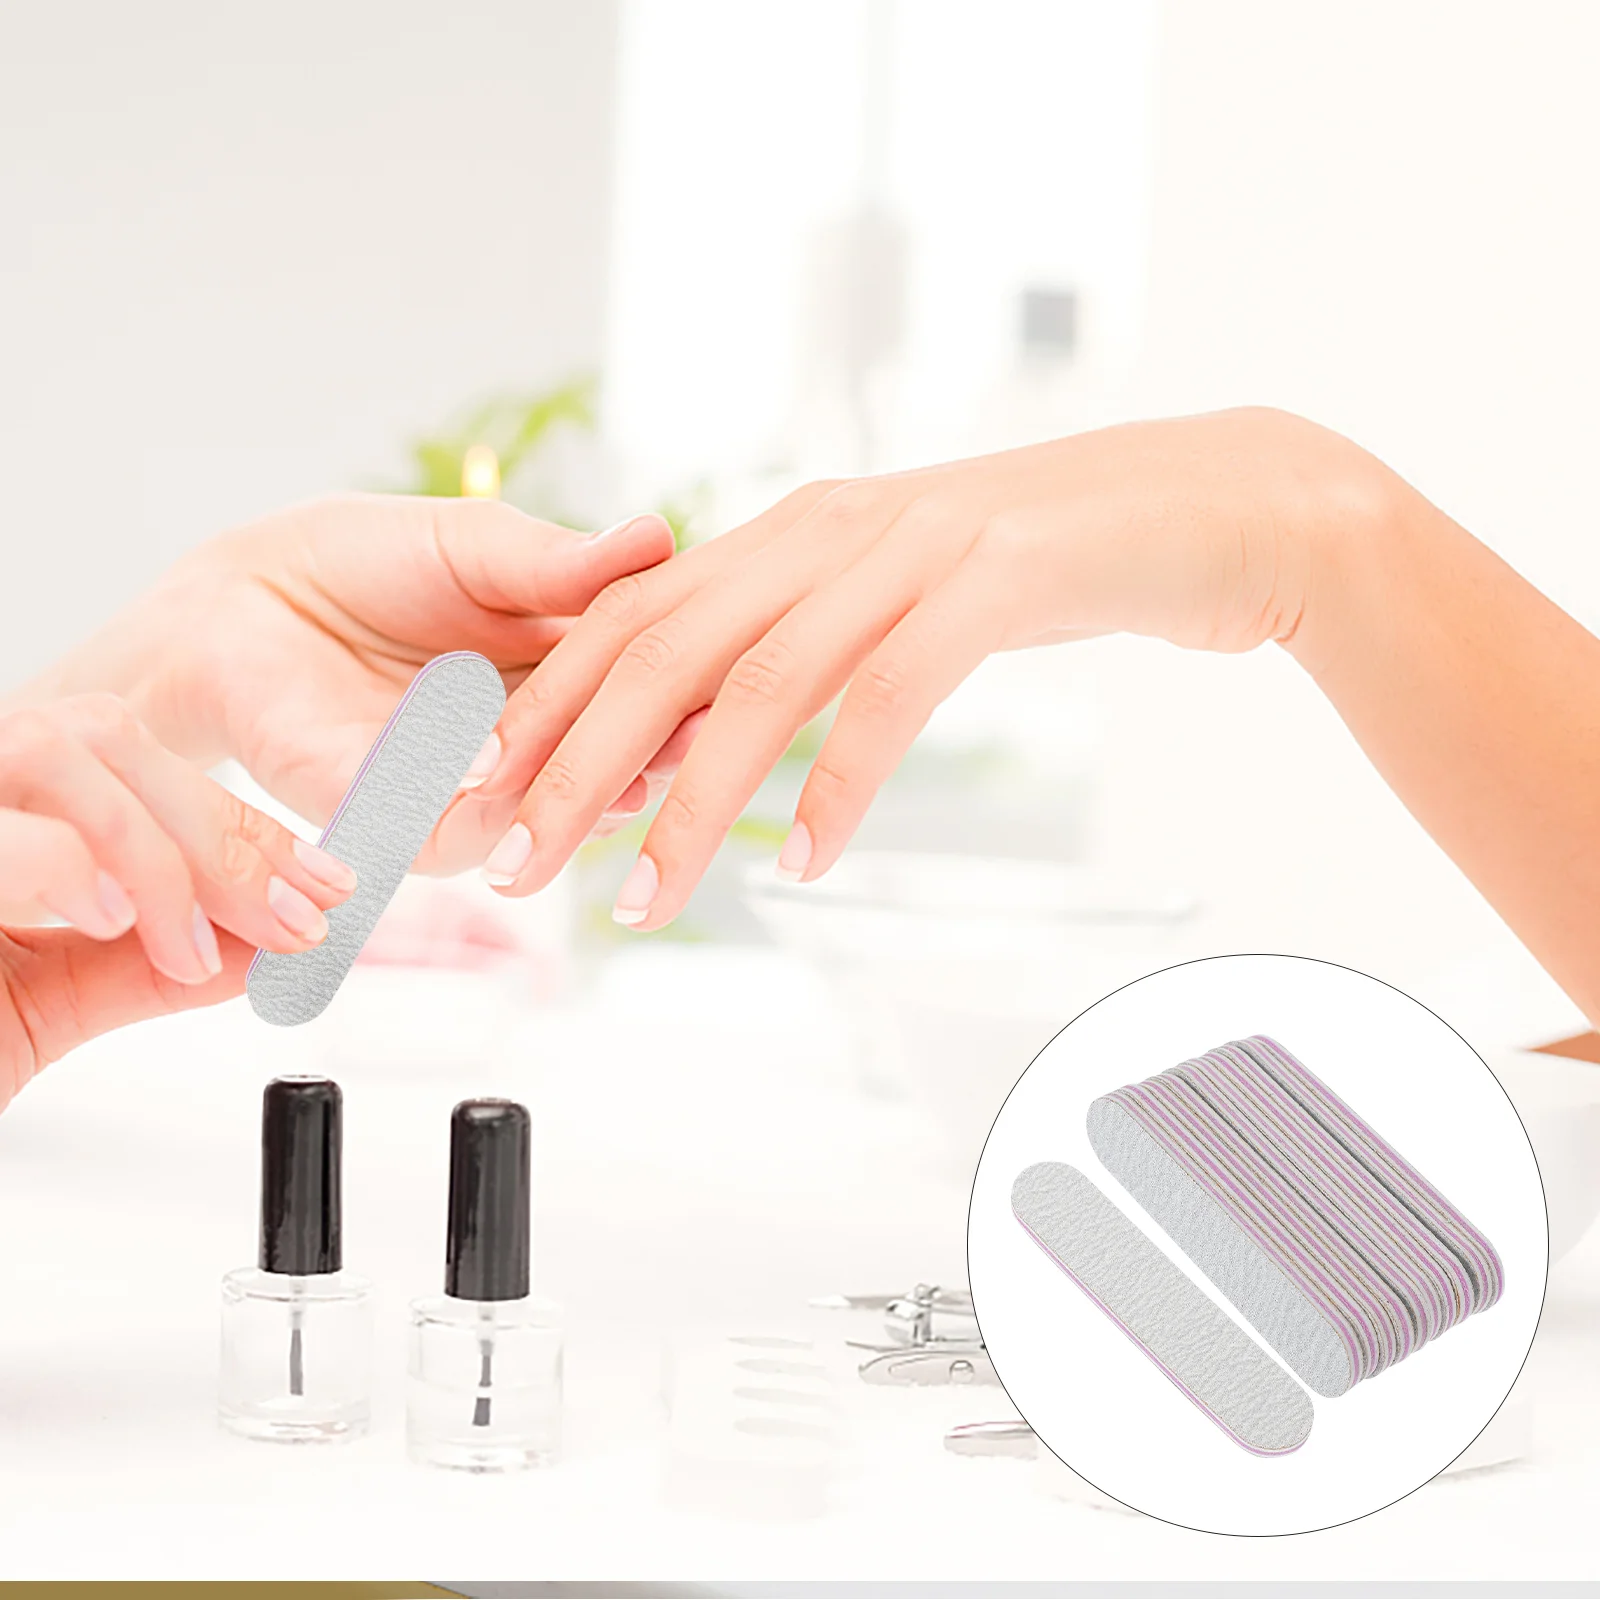 

100 шт. мини-пилка для ногтей инструменты для маникюра салонная наждачная бумага маленькие пилки натуральные ногти педикюр женские акриловые